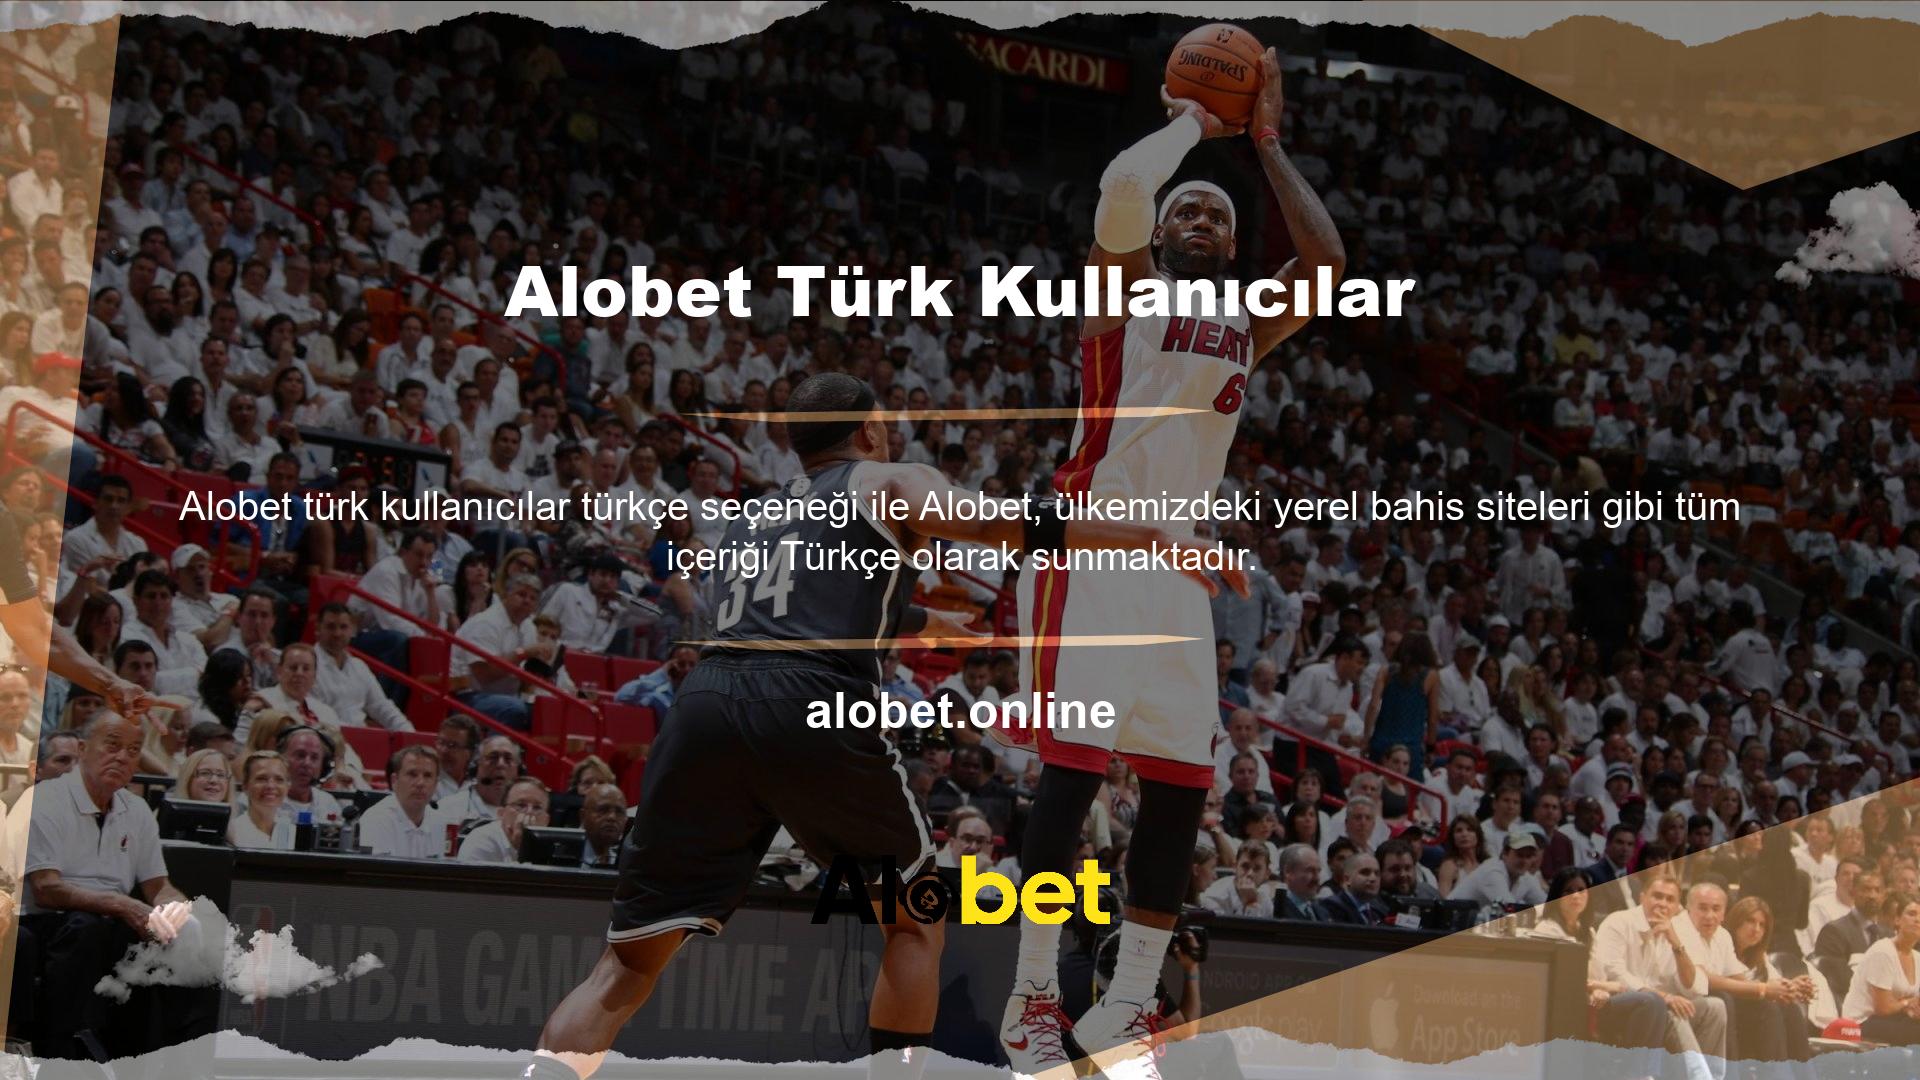 Türk kullanıcılar yeni giriş adresleriyle üyelik formlarını doldurmak, oyun seçmek, para yatırmak dahil tüm işlemlerini Türkçe gerçekleştirebilecek